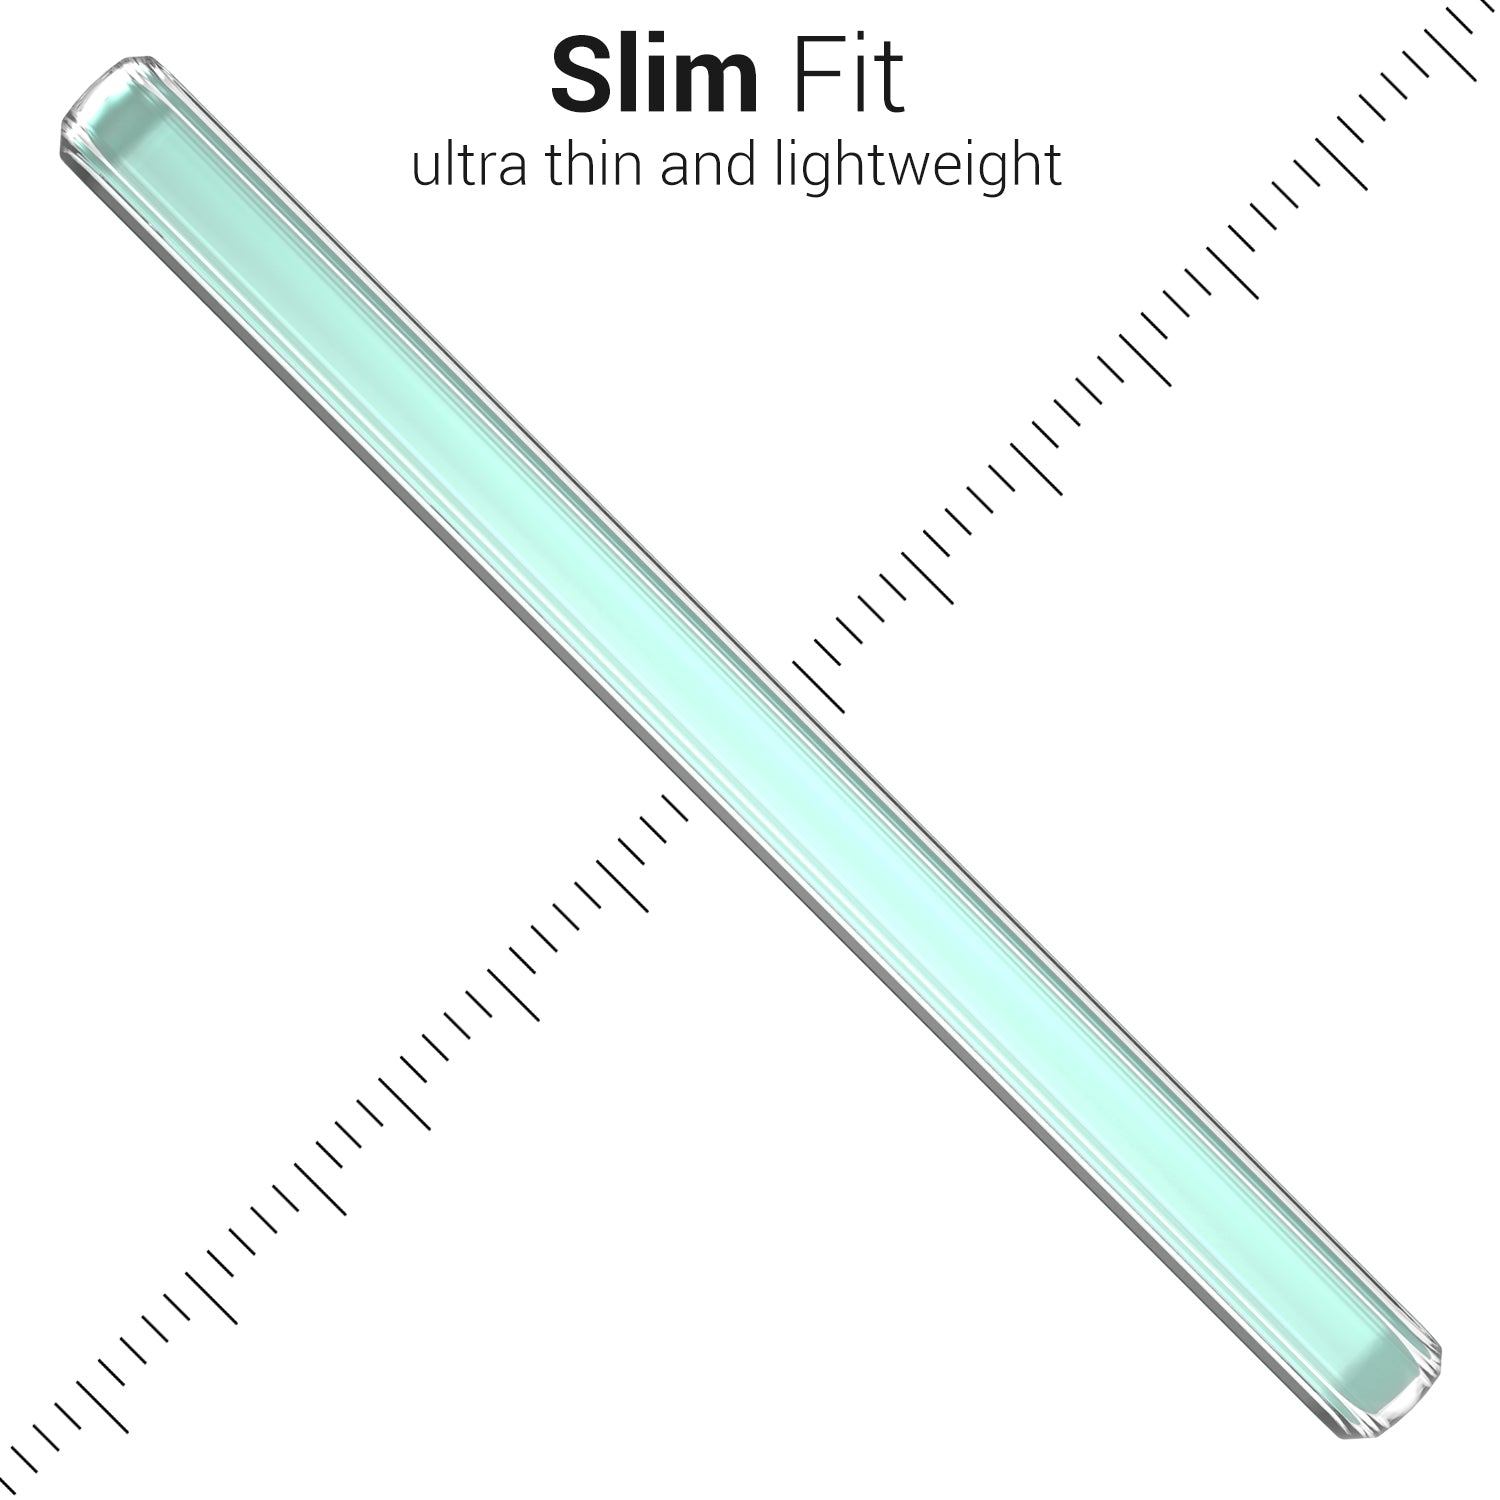 Sony Xperia 1 IV Case - Slim TPU Silicone Phone Cover Skin